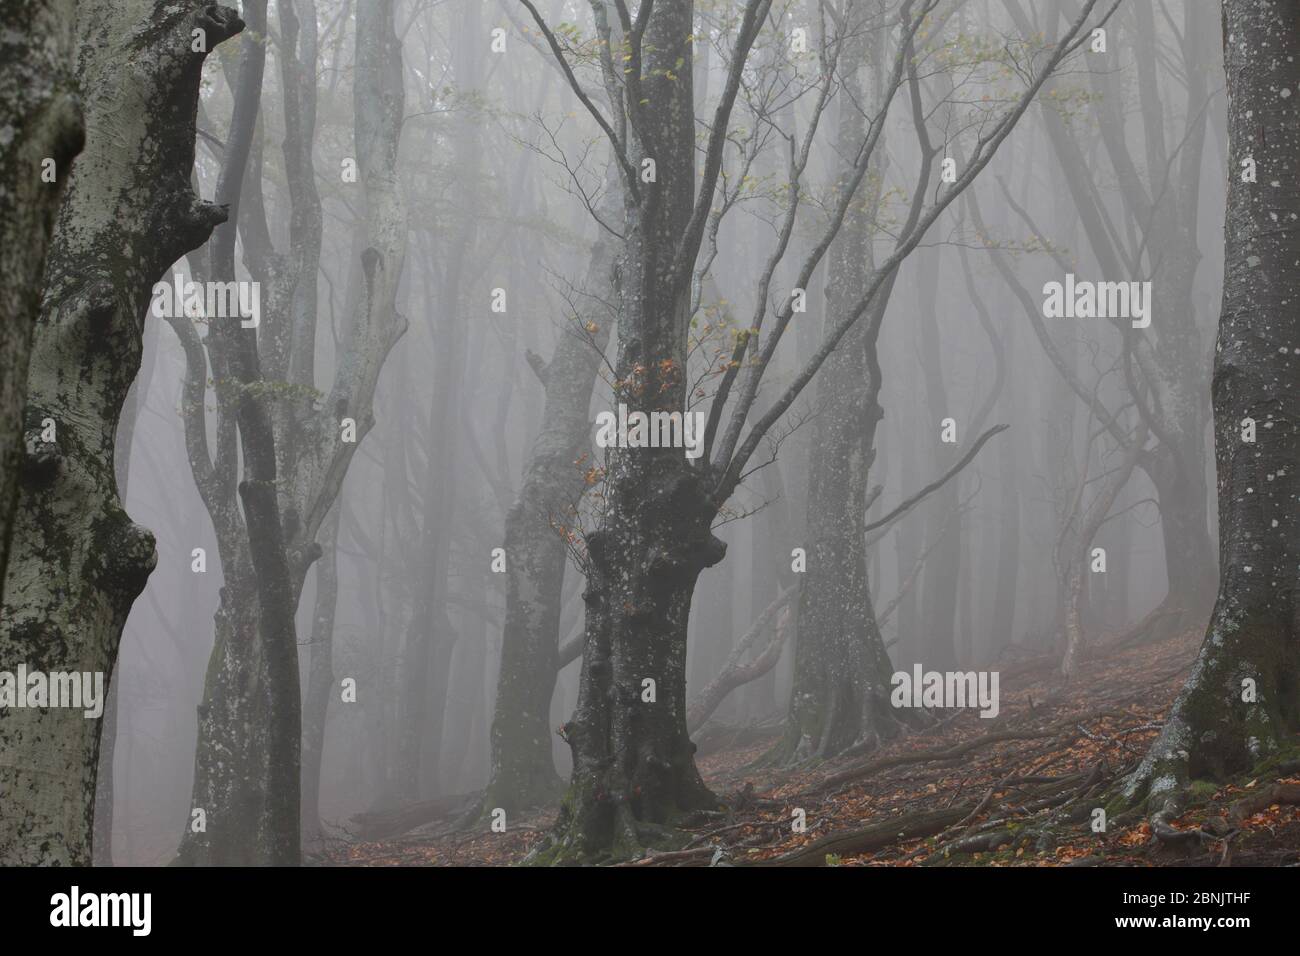 European beech (Fagus sylvatica) trees in autumn mist, Alberes Mountains, Pyrenees, France, October. Stock Photo